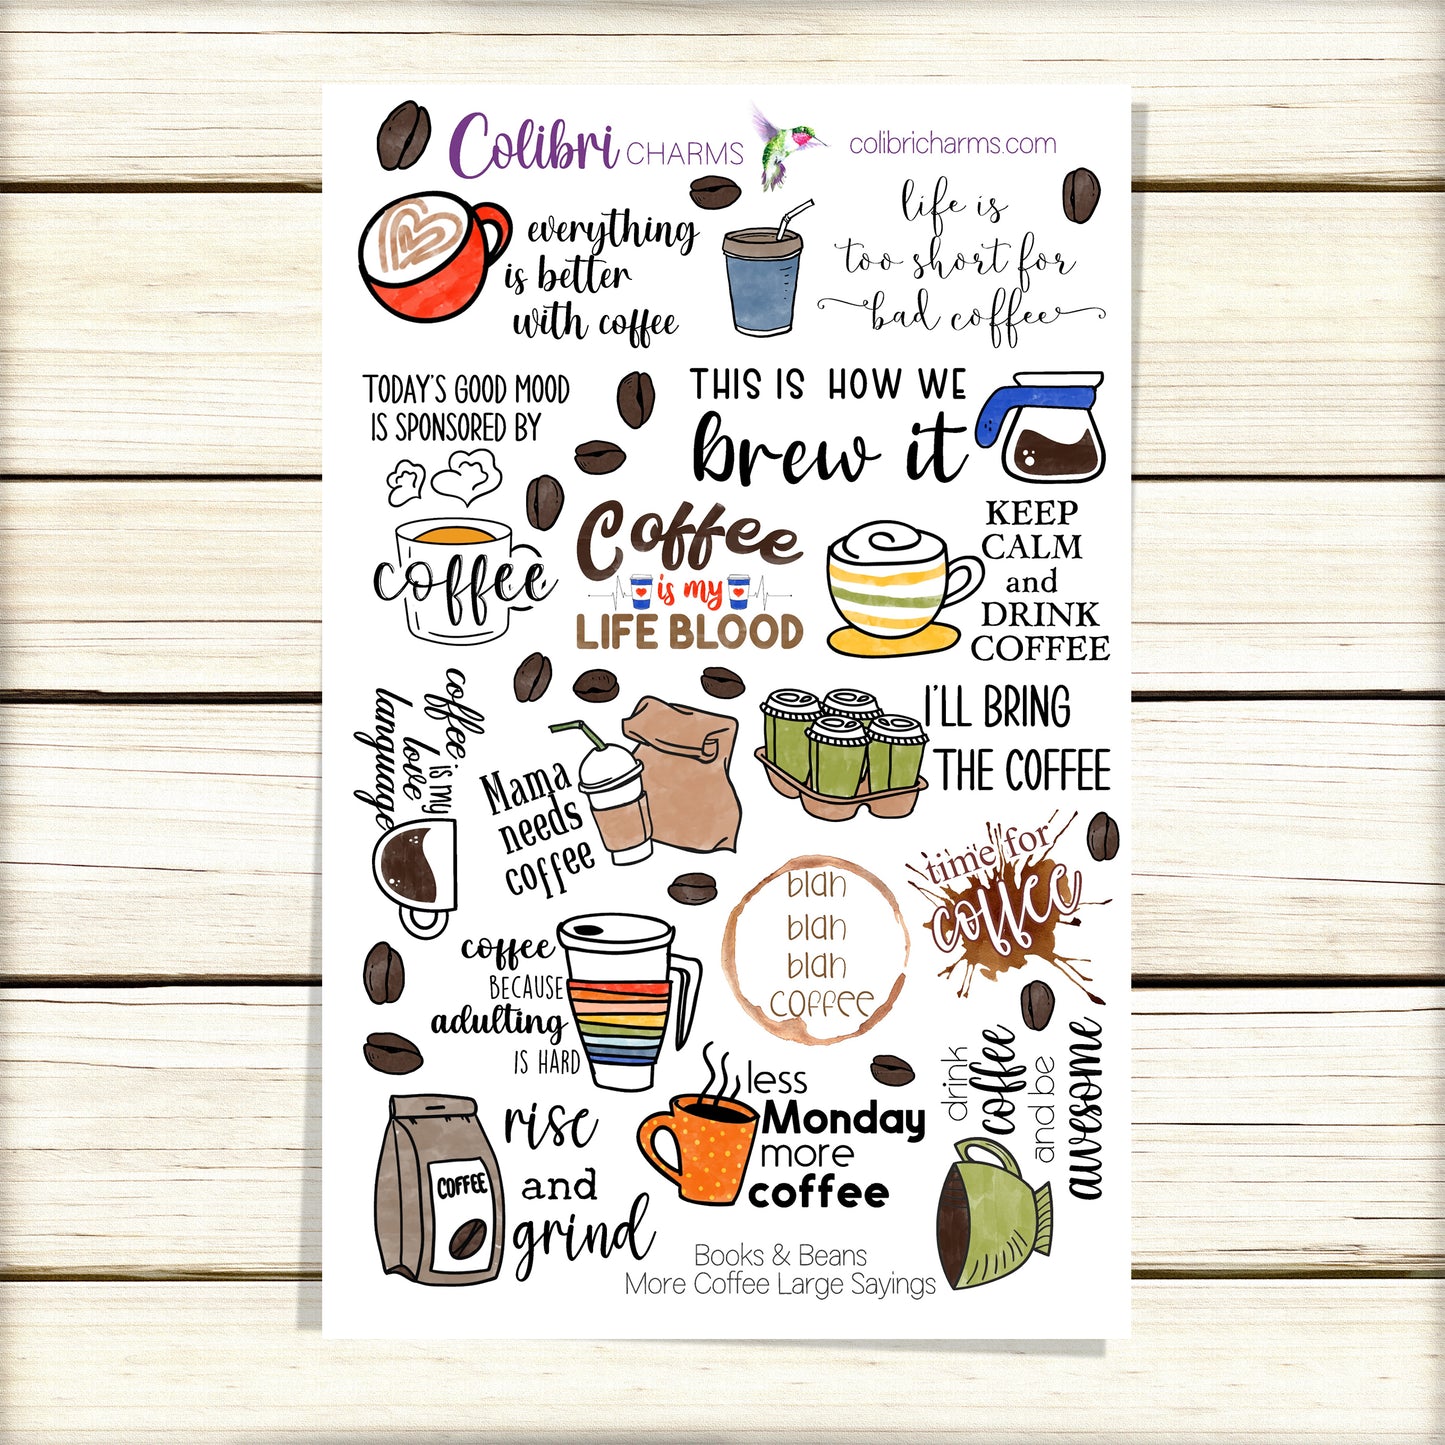 Coffee Lover's Planner Sticker Set